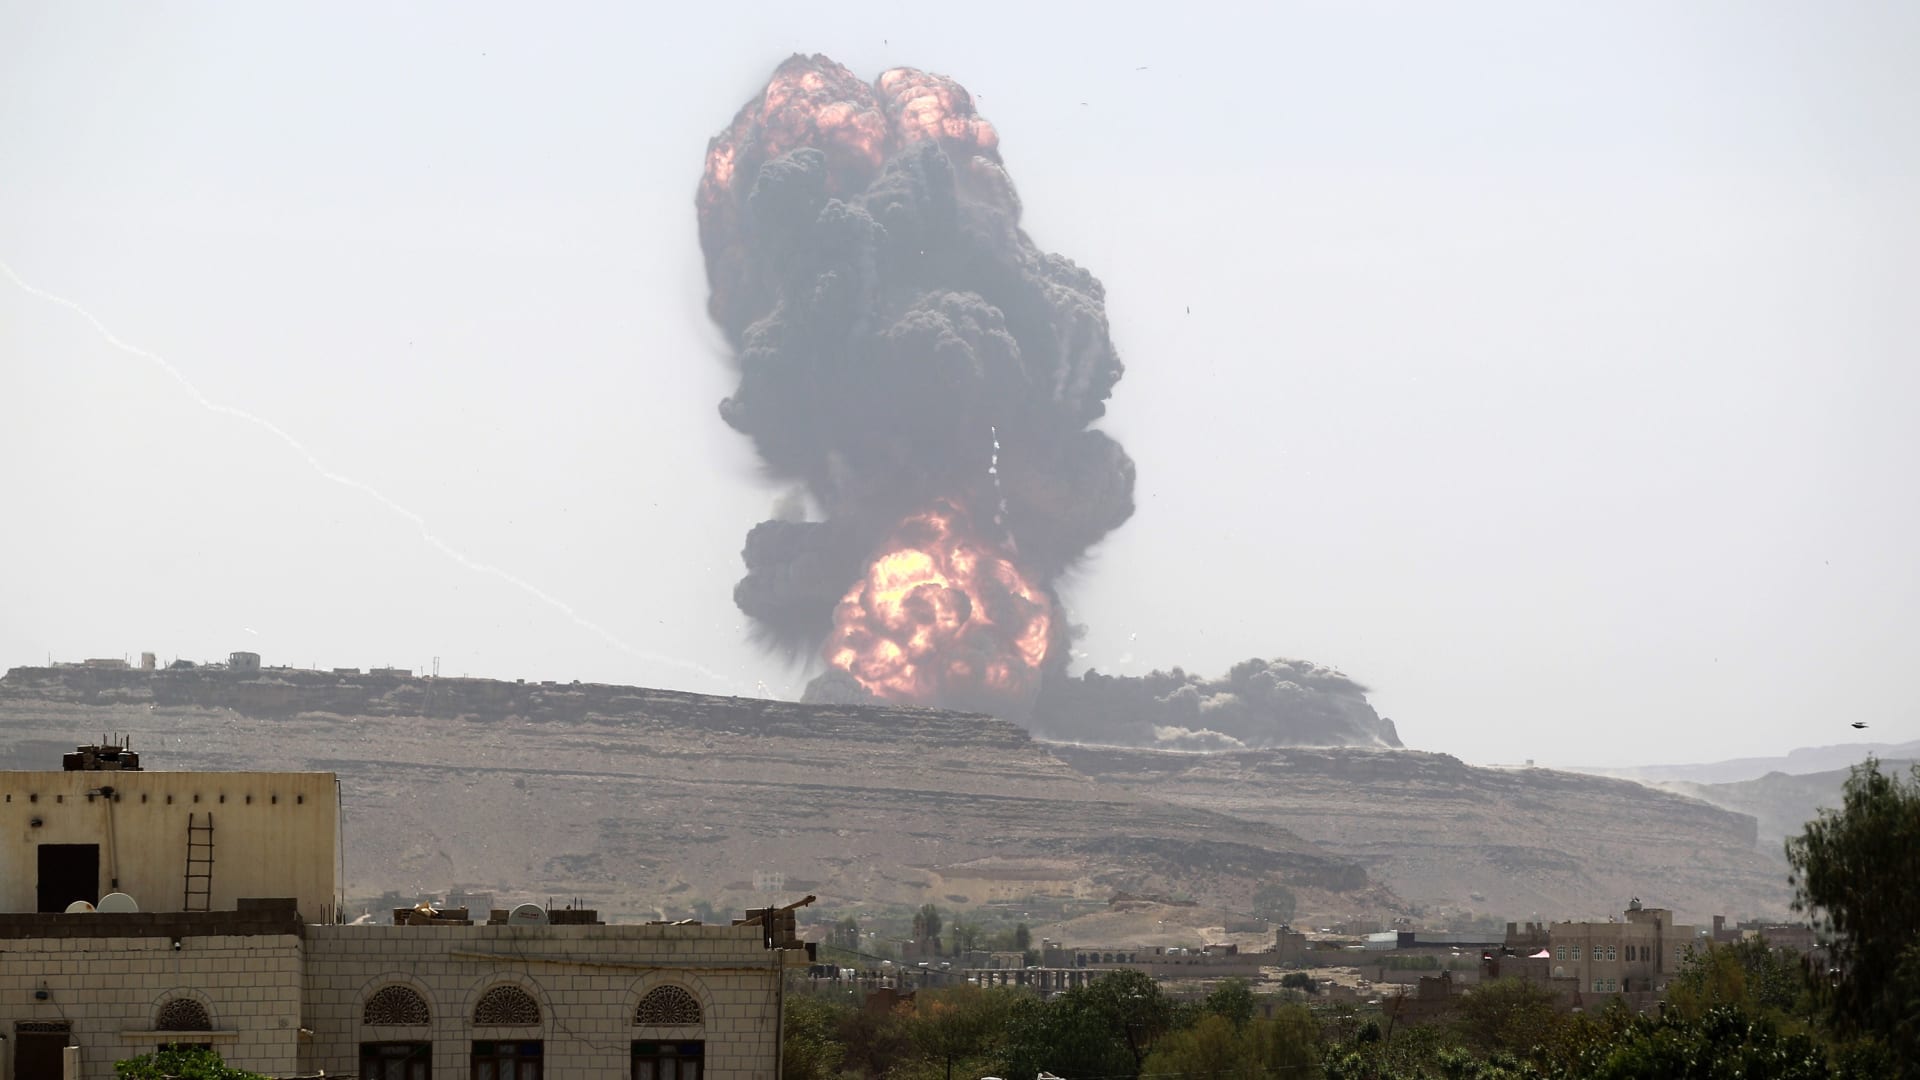 التحالف يواصل ضرباته الجوية للحوثيين في صنعاء ويدمر منظومة اتصال للطائرات المسيرة